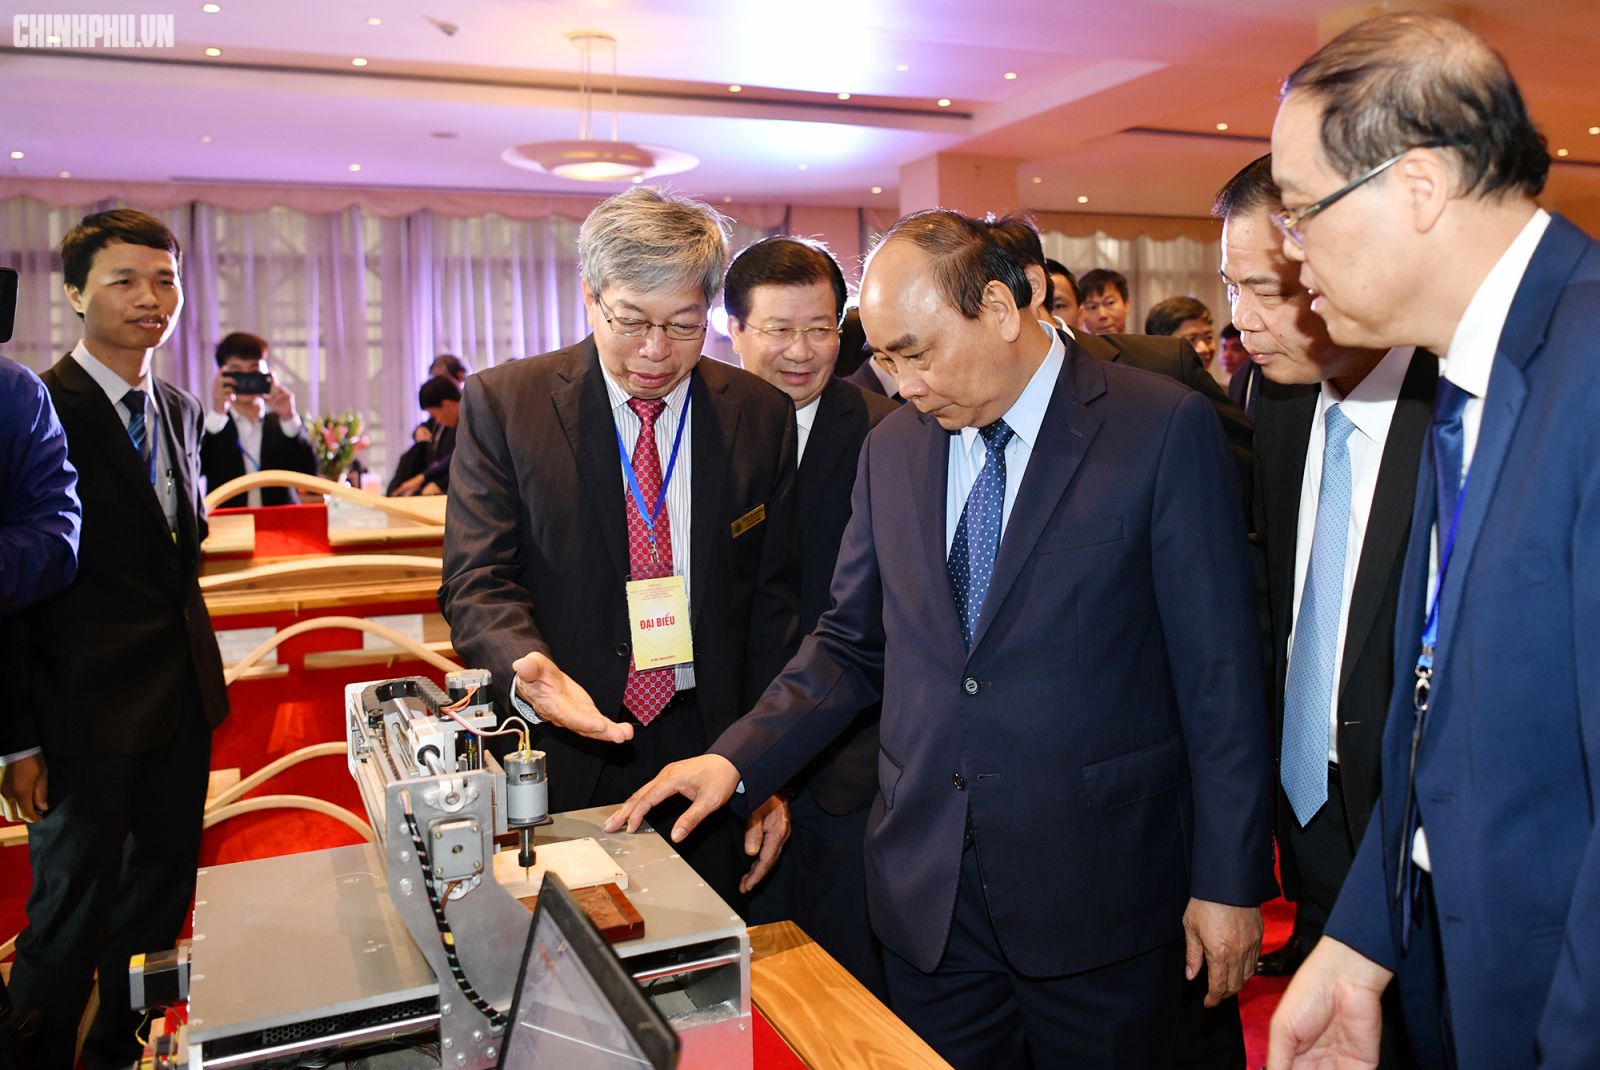 Thủ tướng nghe đại diện một doanh nghiệp giới thiệu thiết bị chế biến gỗ. Ảnh: VGP/Quang Hiếu 